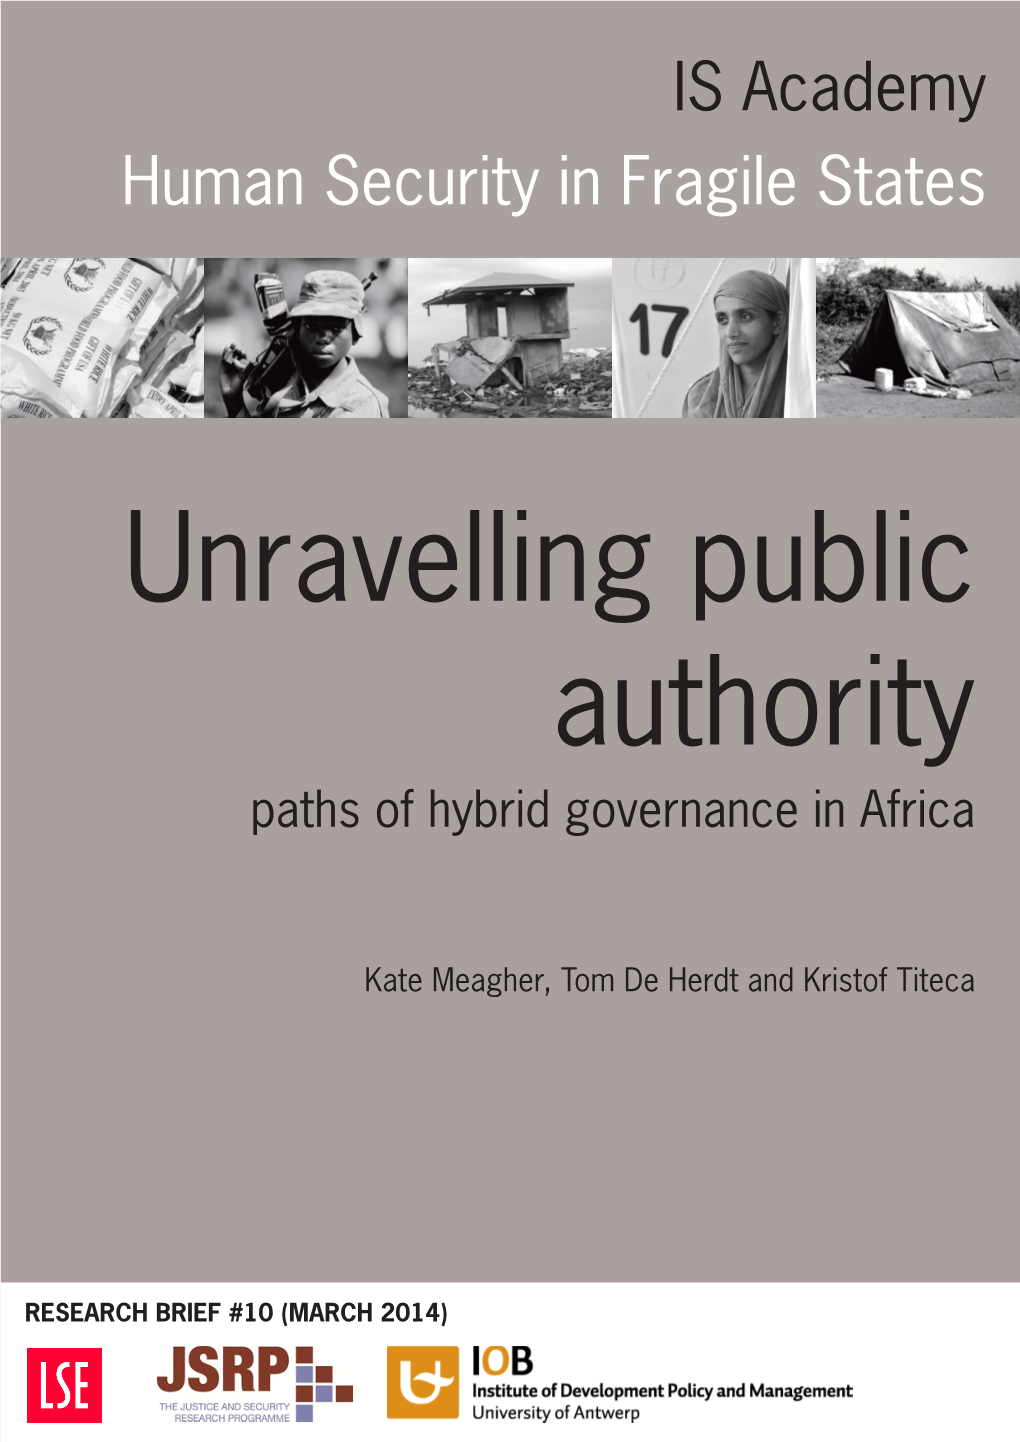 Hybrid Governance in Africa